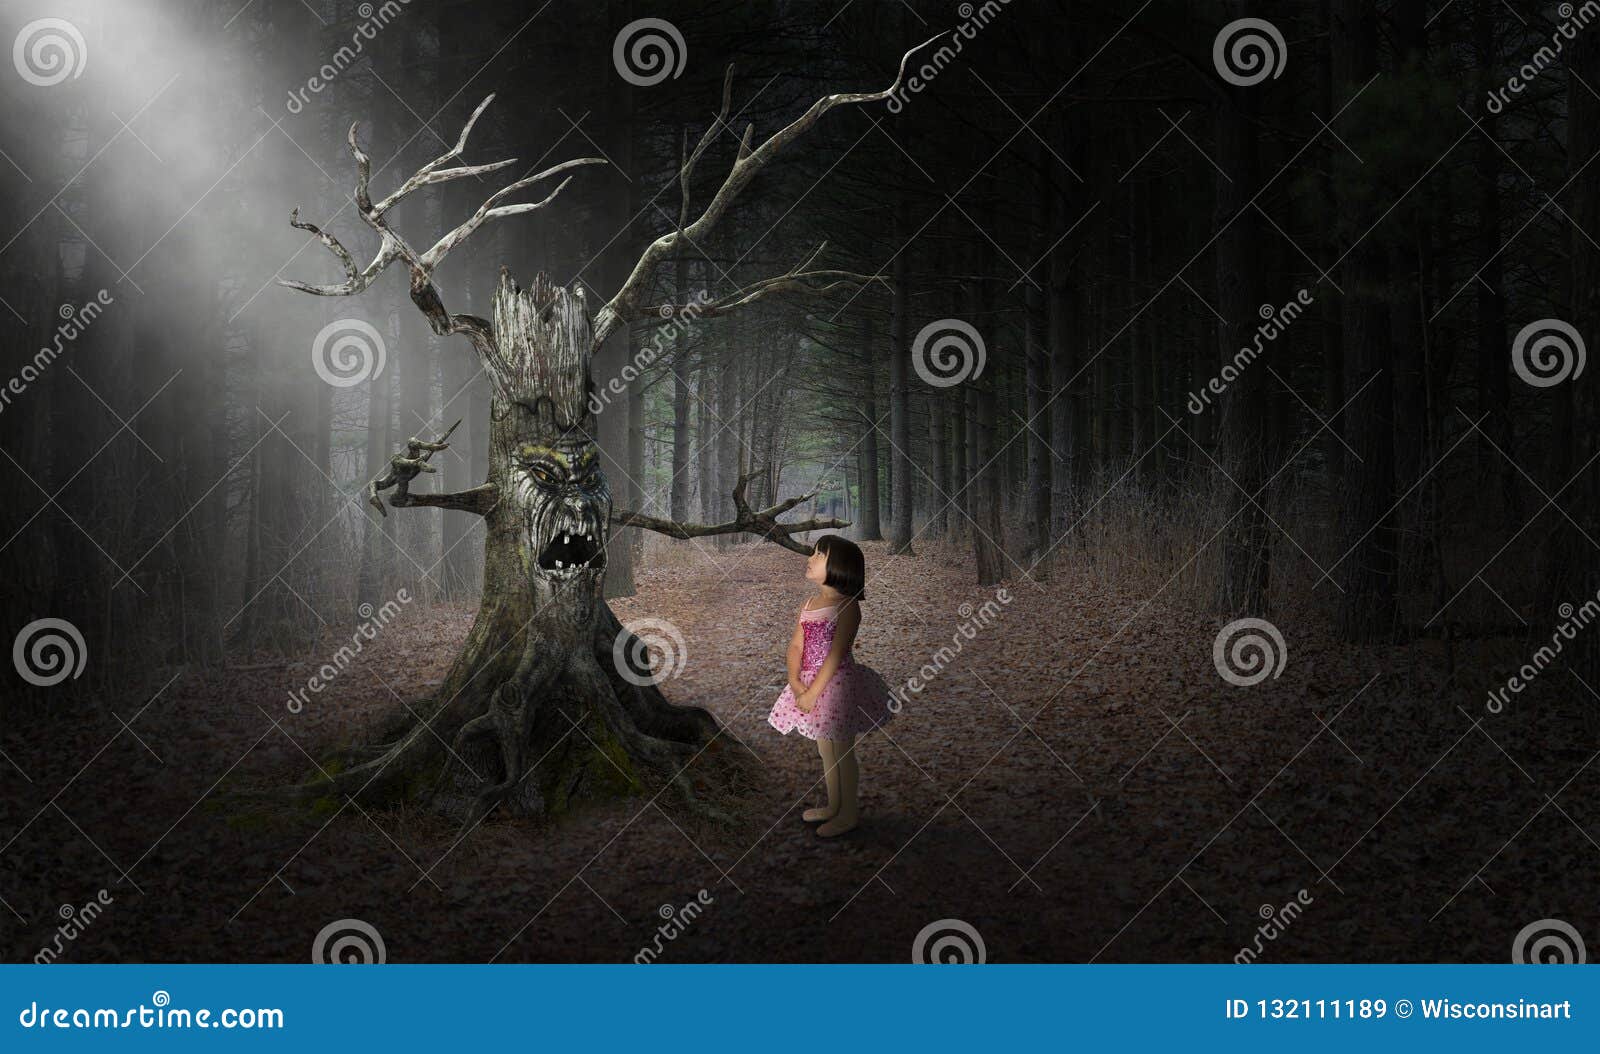 evil tree halloween monster, girl, surreal